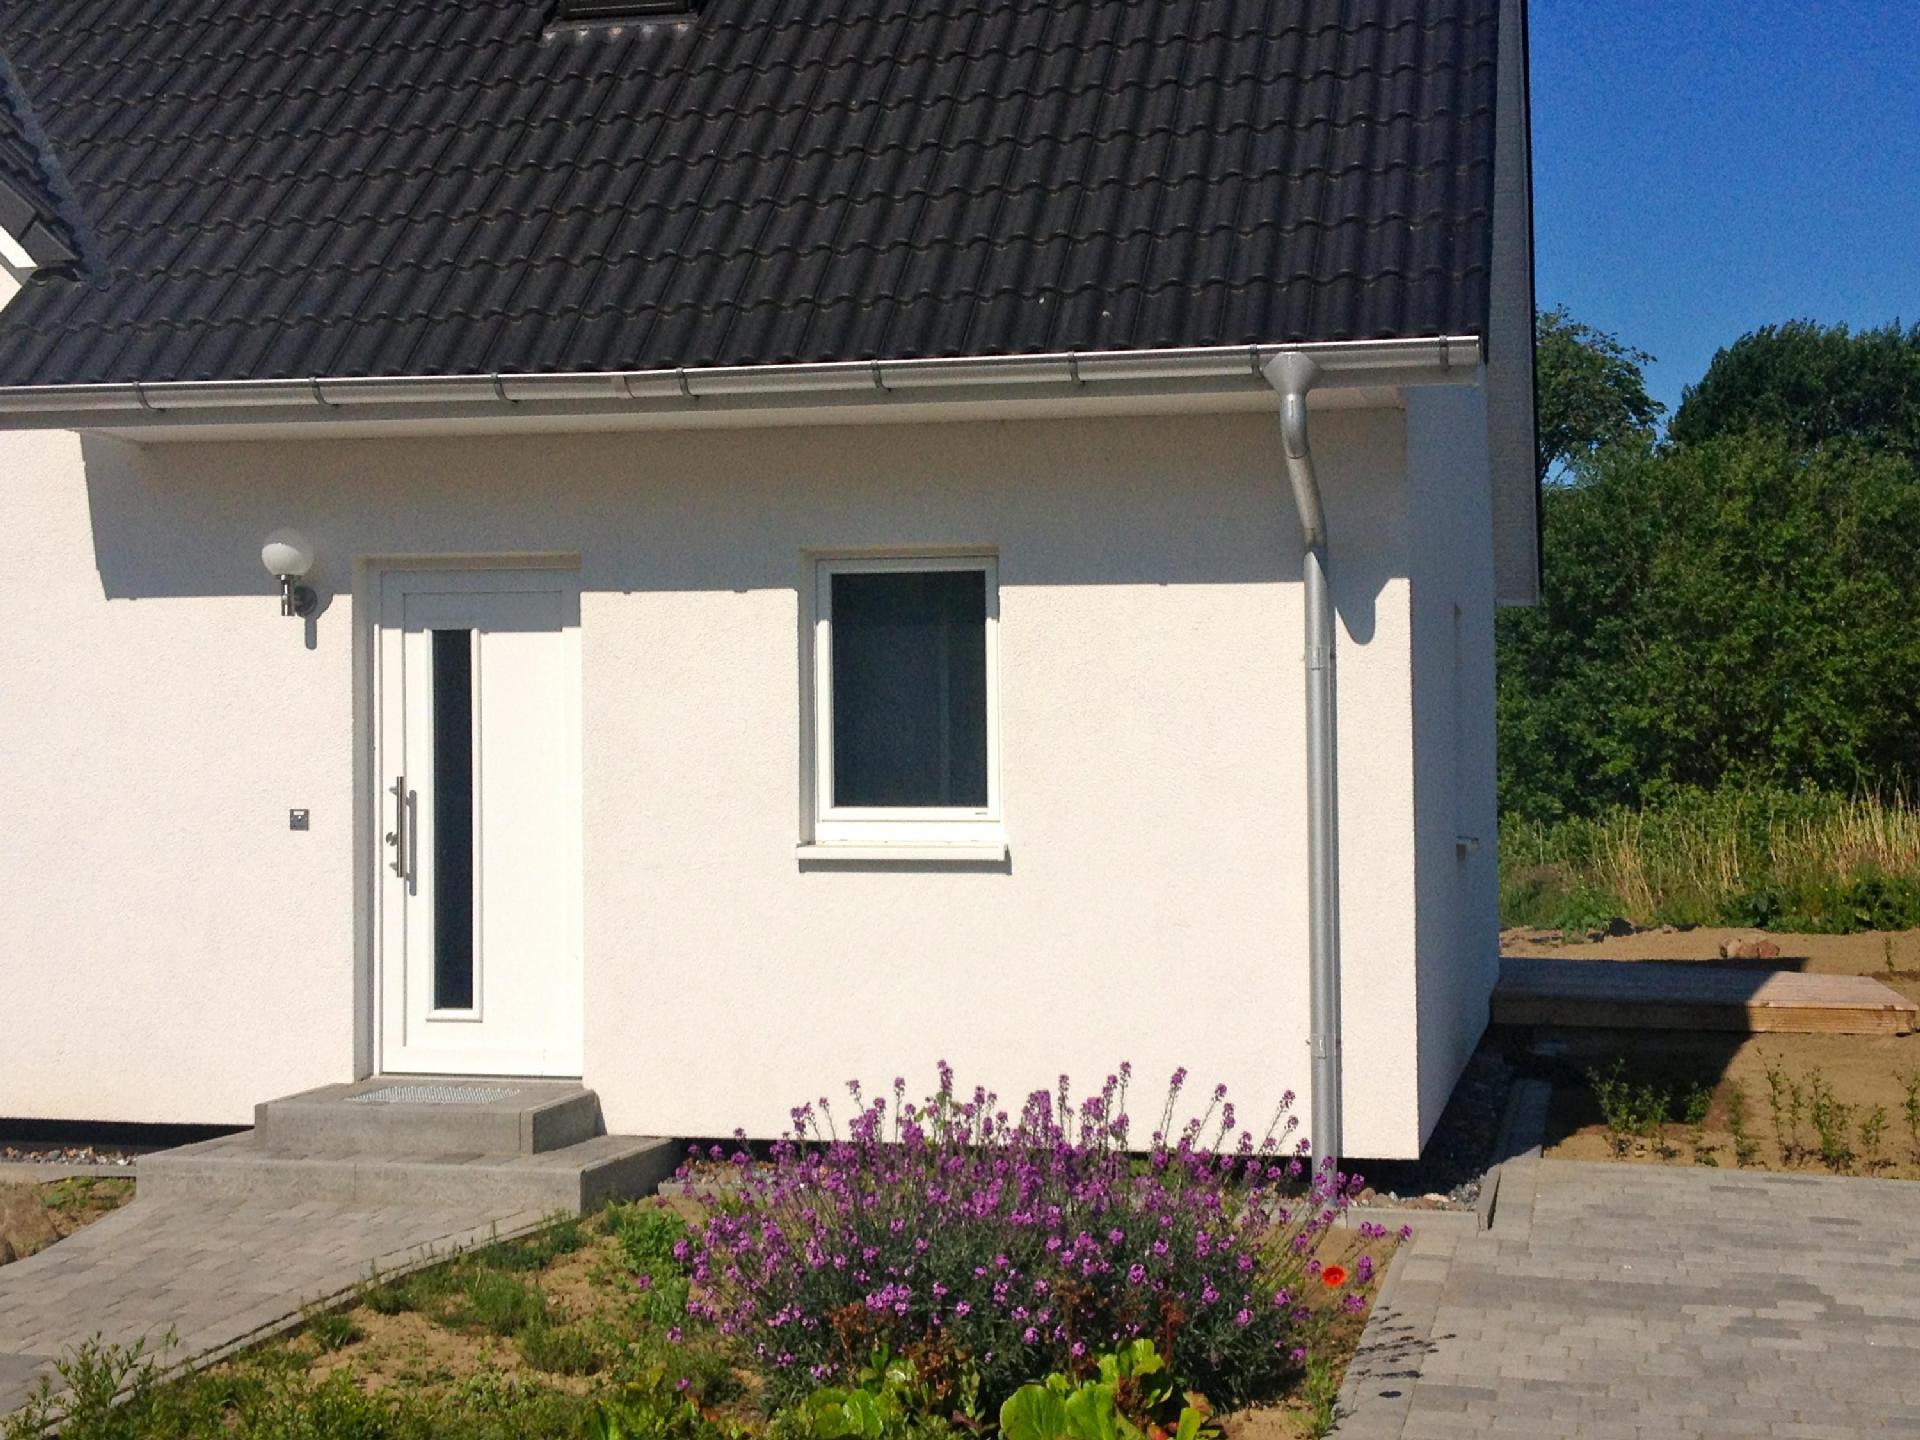 Wohnung in Patzig mit Terrasse Ferienhaus an der Ostsee